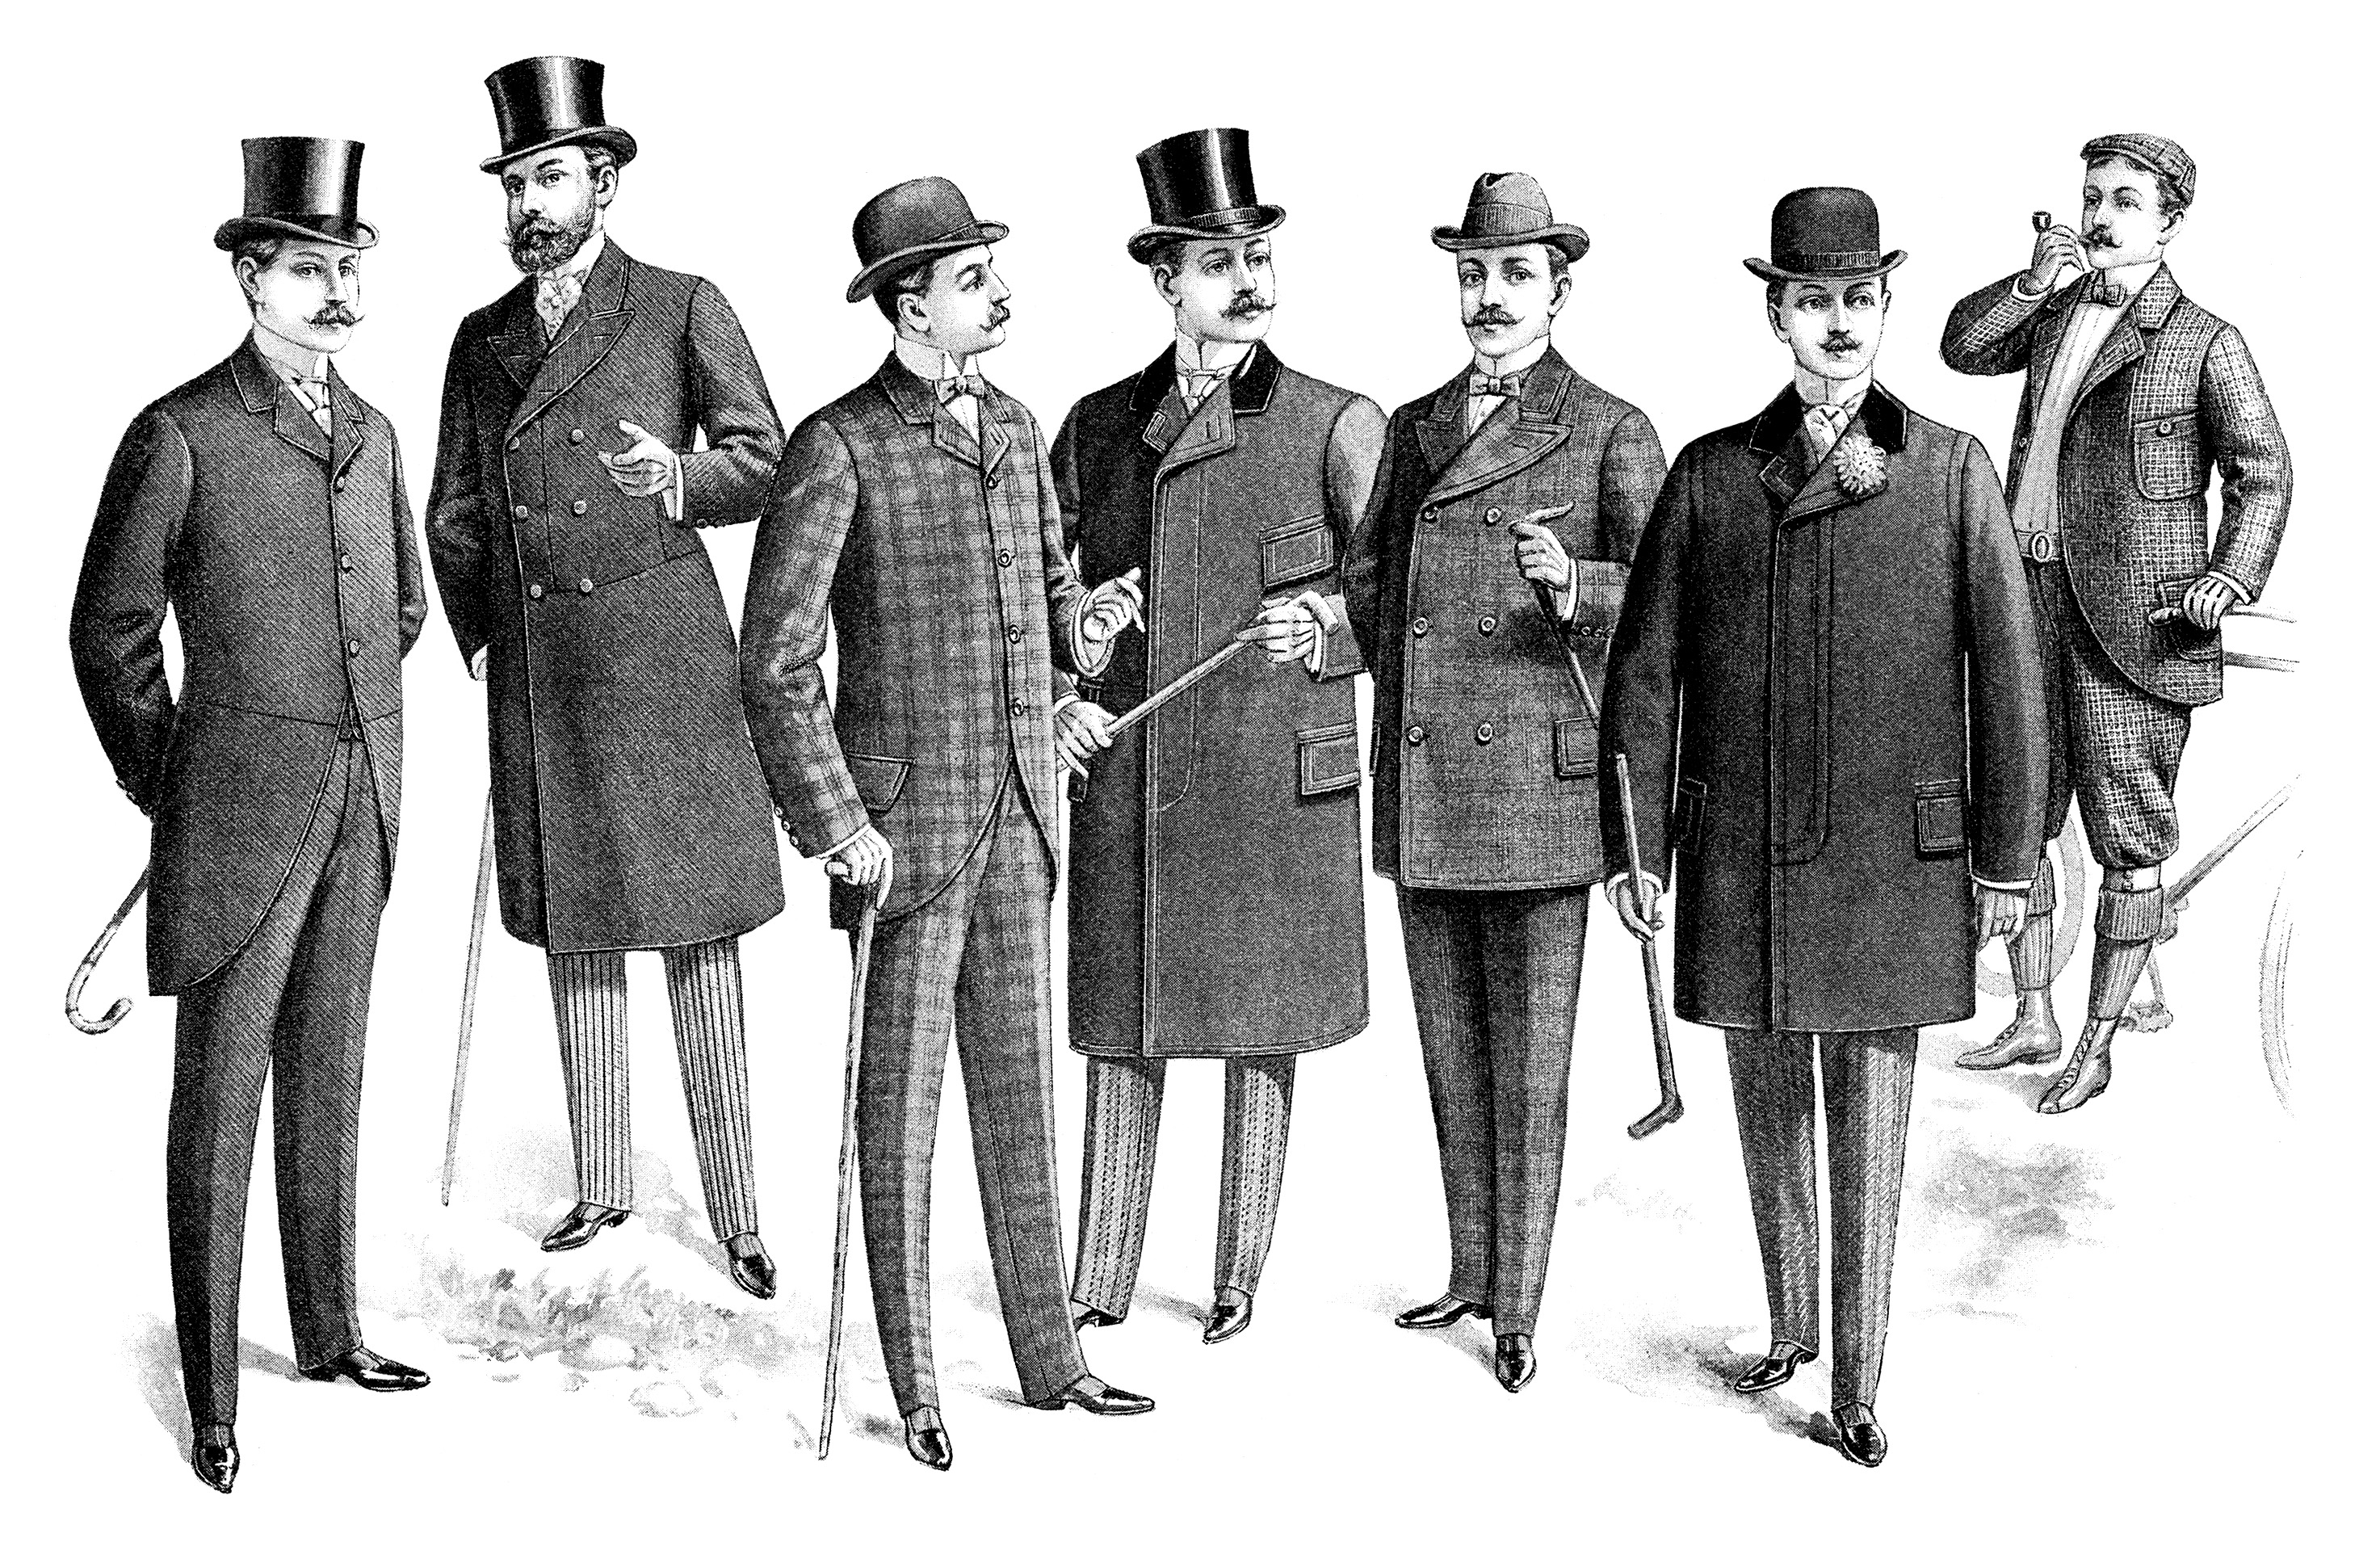 Мужская мода стиля Модерн конец 19 века начало 20 века